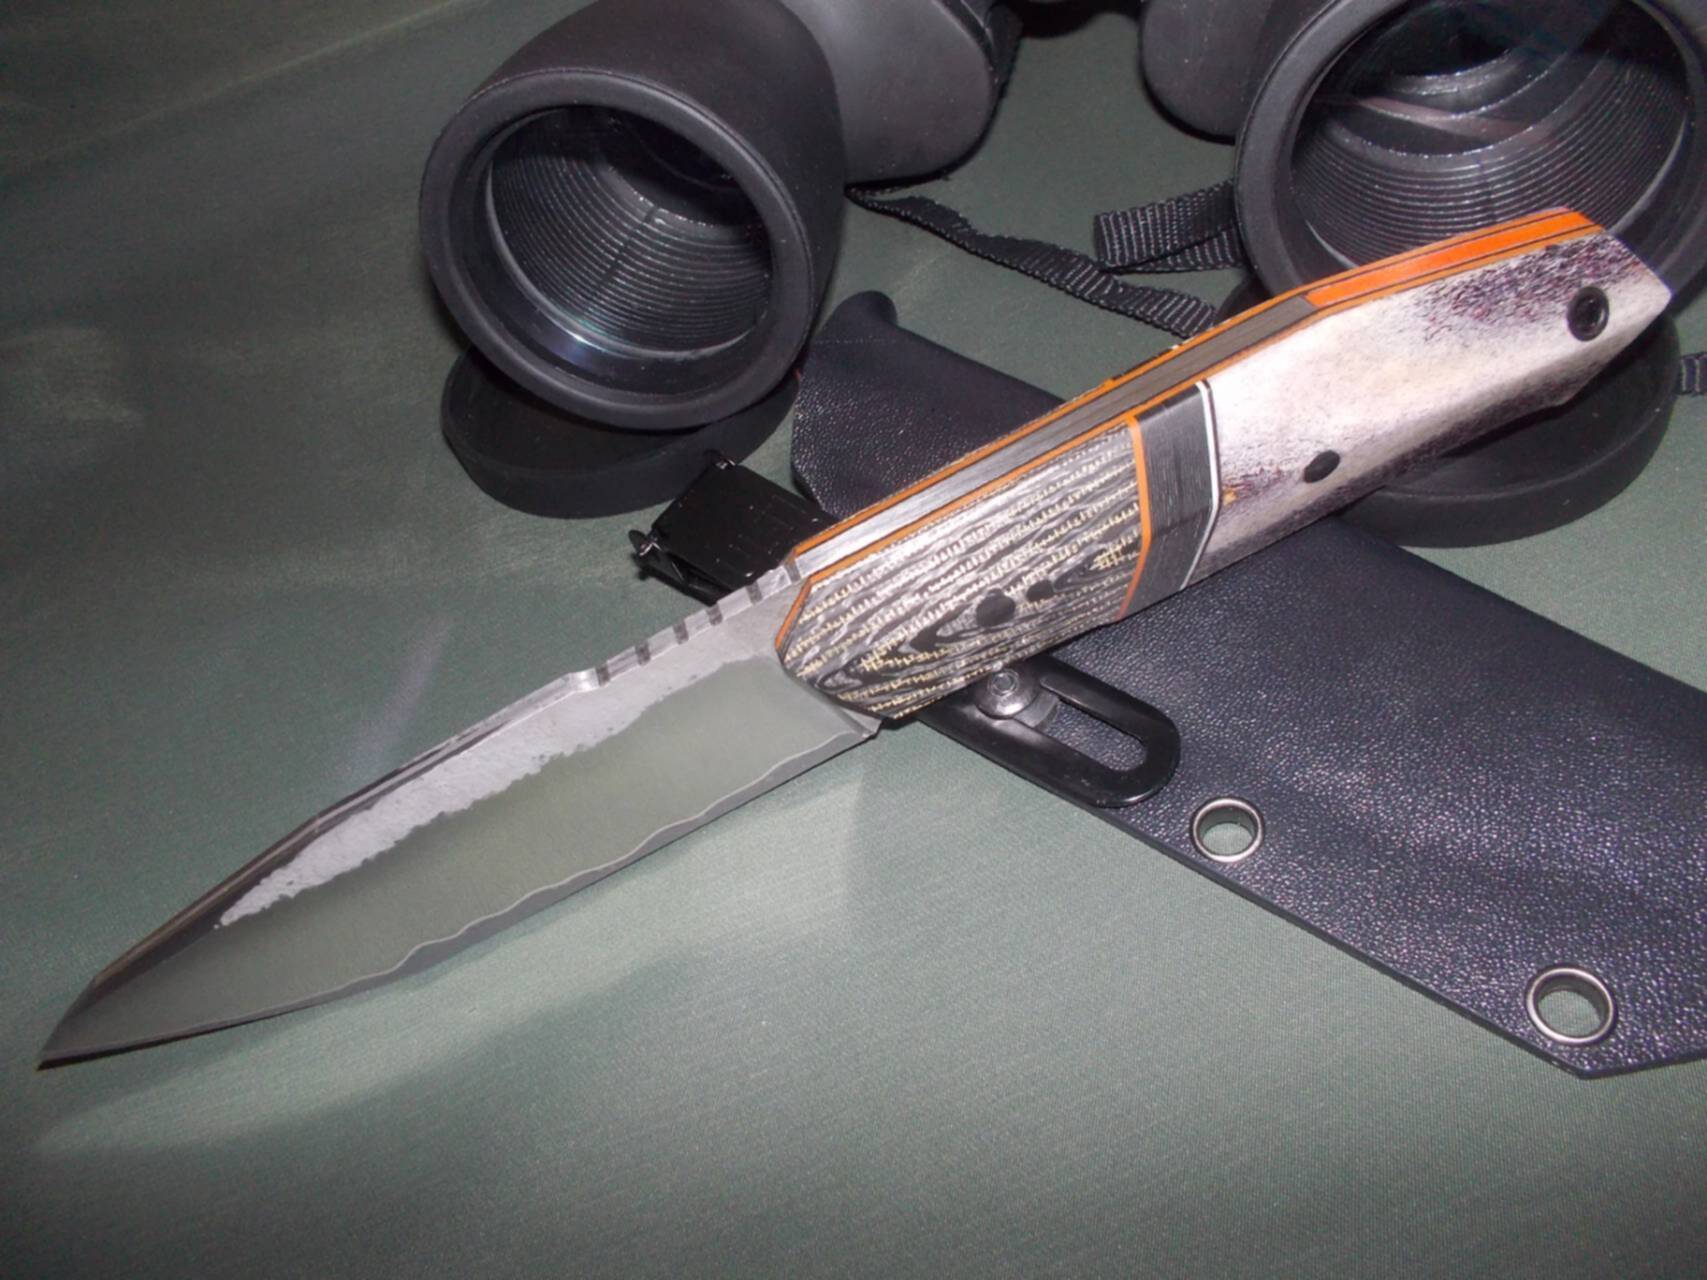 Нож фултанг из PGK. WORKINGKNIFE, фултанг, 115х22.5х3.8. Нож с ламинатом и карбоном. Большой харизматичный нож.